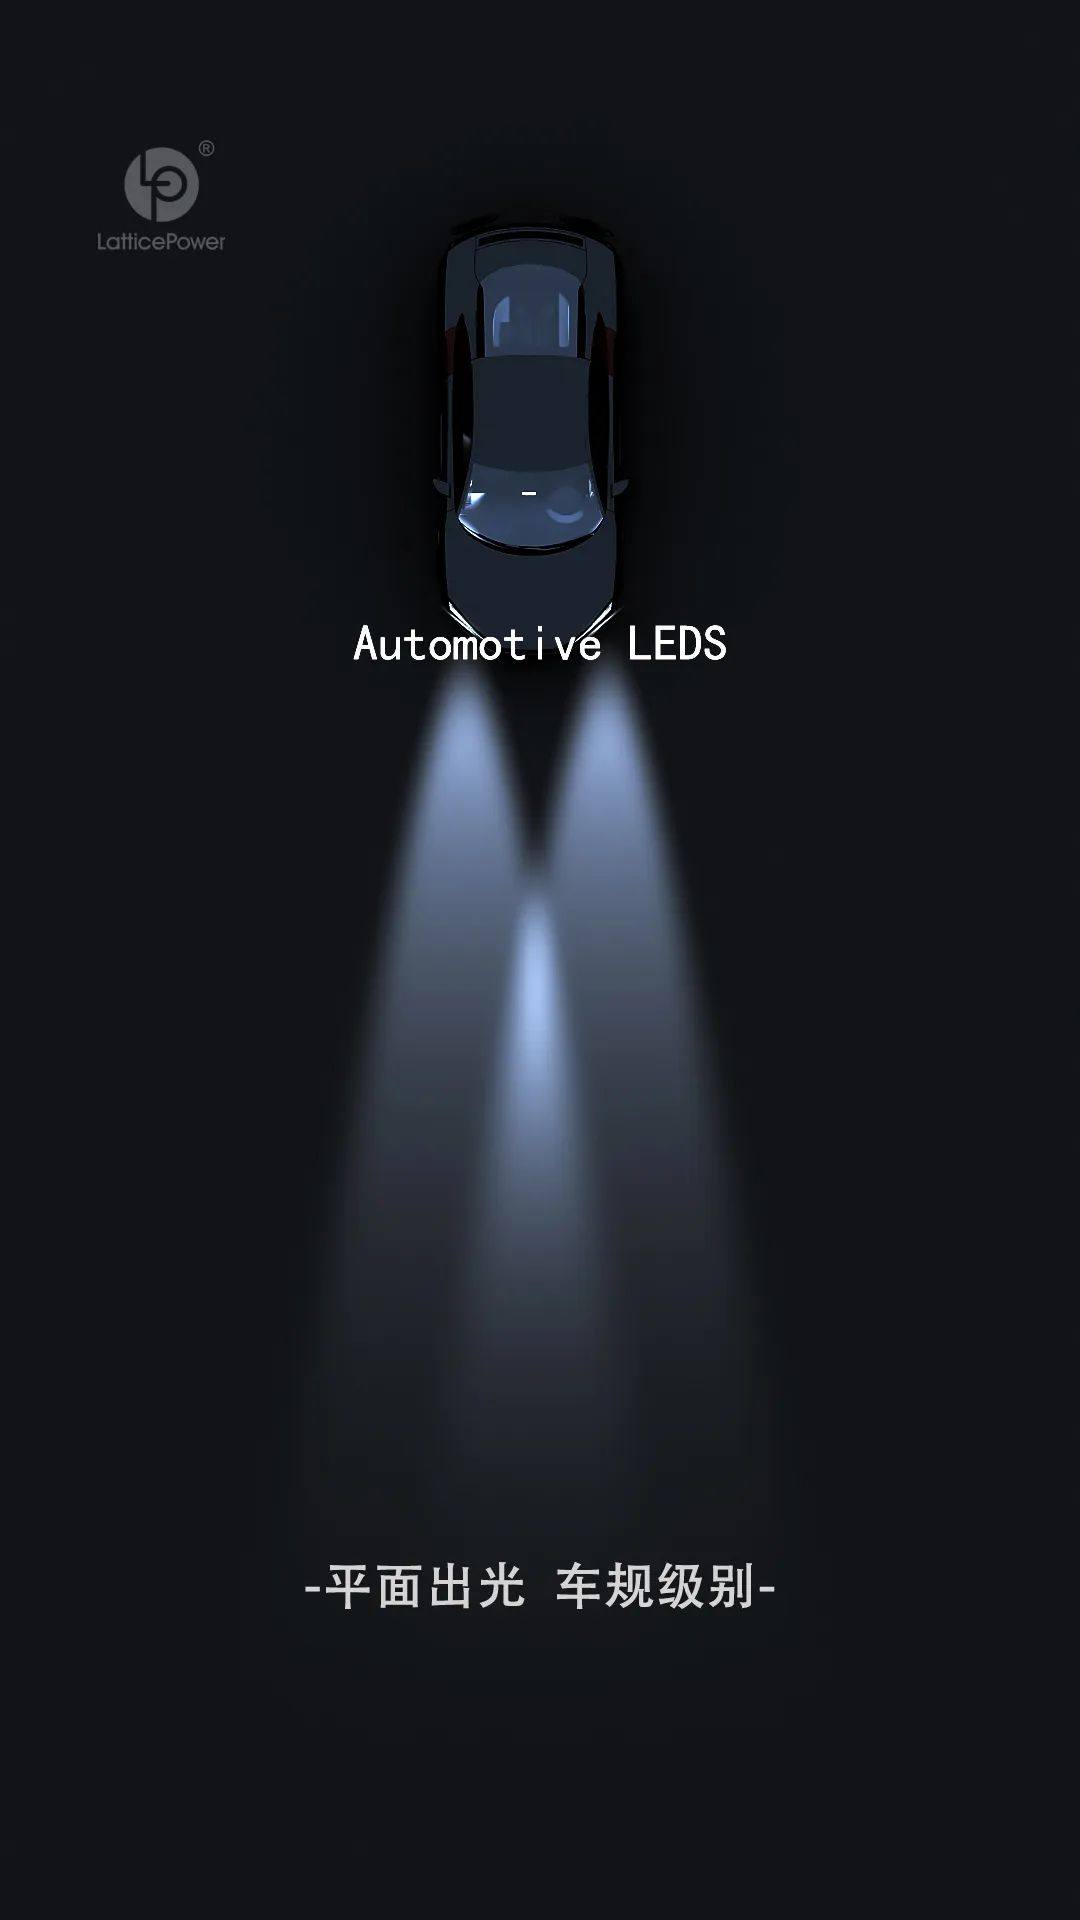 晶能光电汽车前装车灯LEDs产品介绍